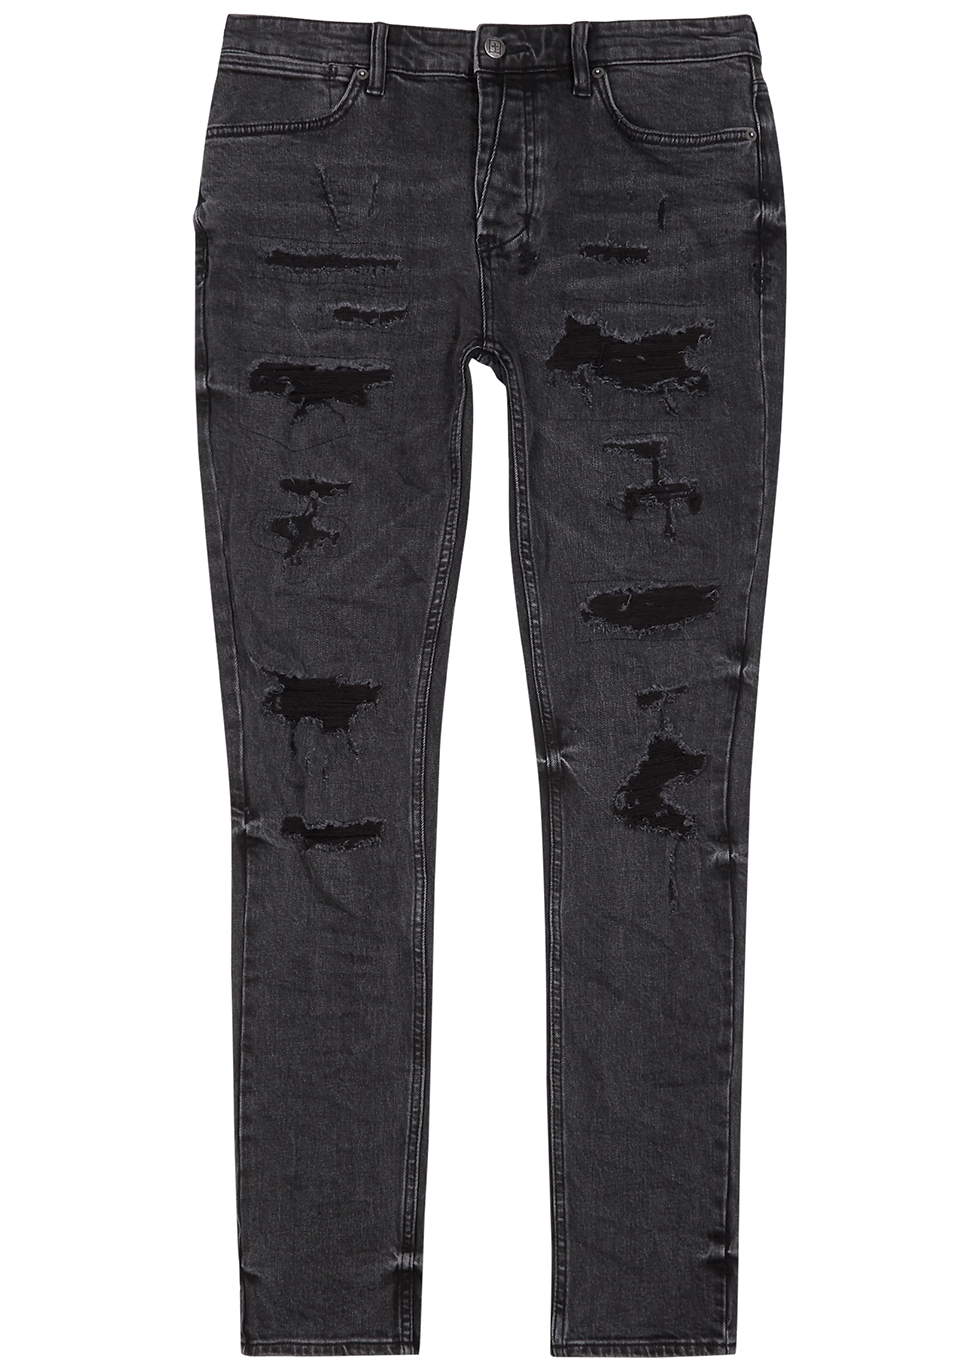 Van Winkle faded black distressed skinny jeans